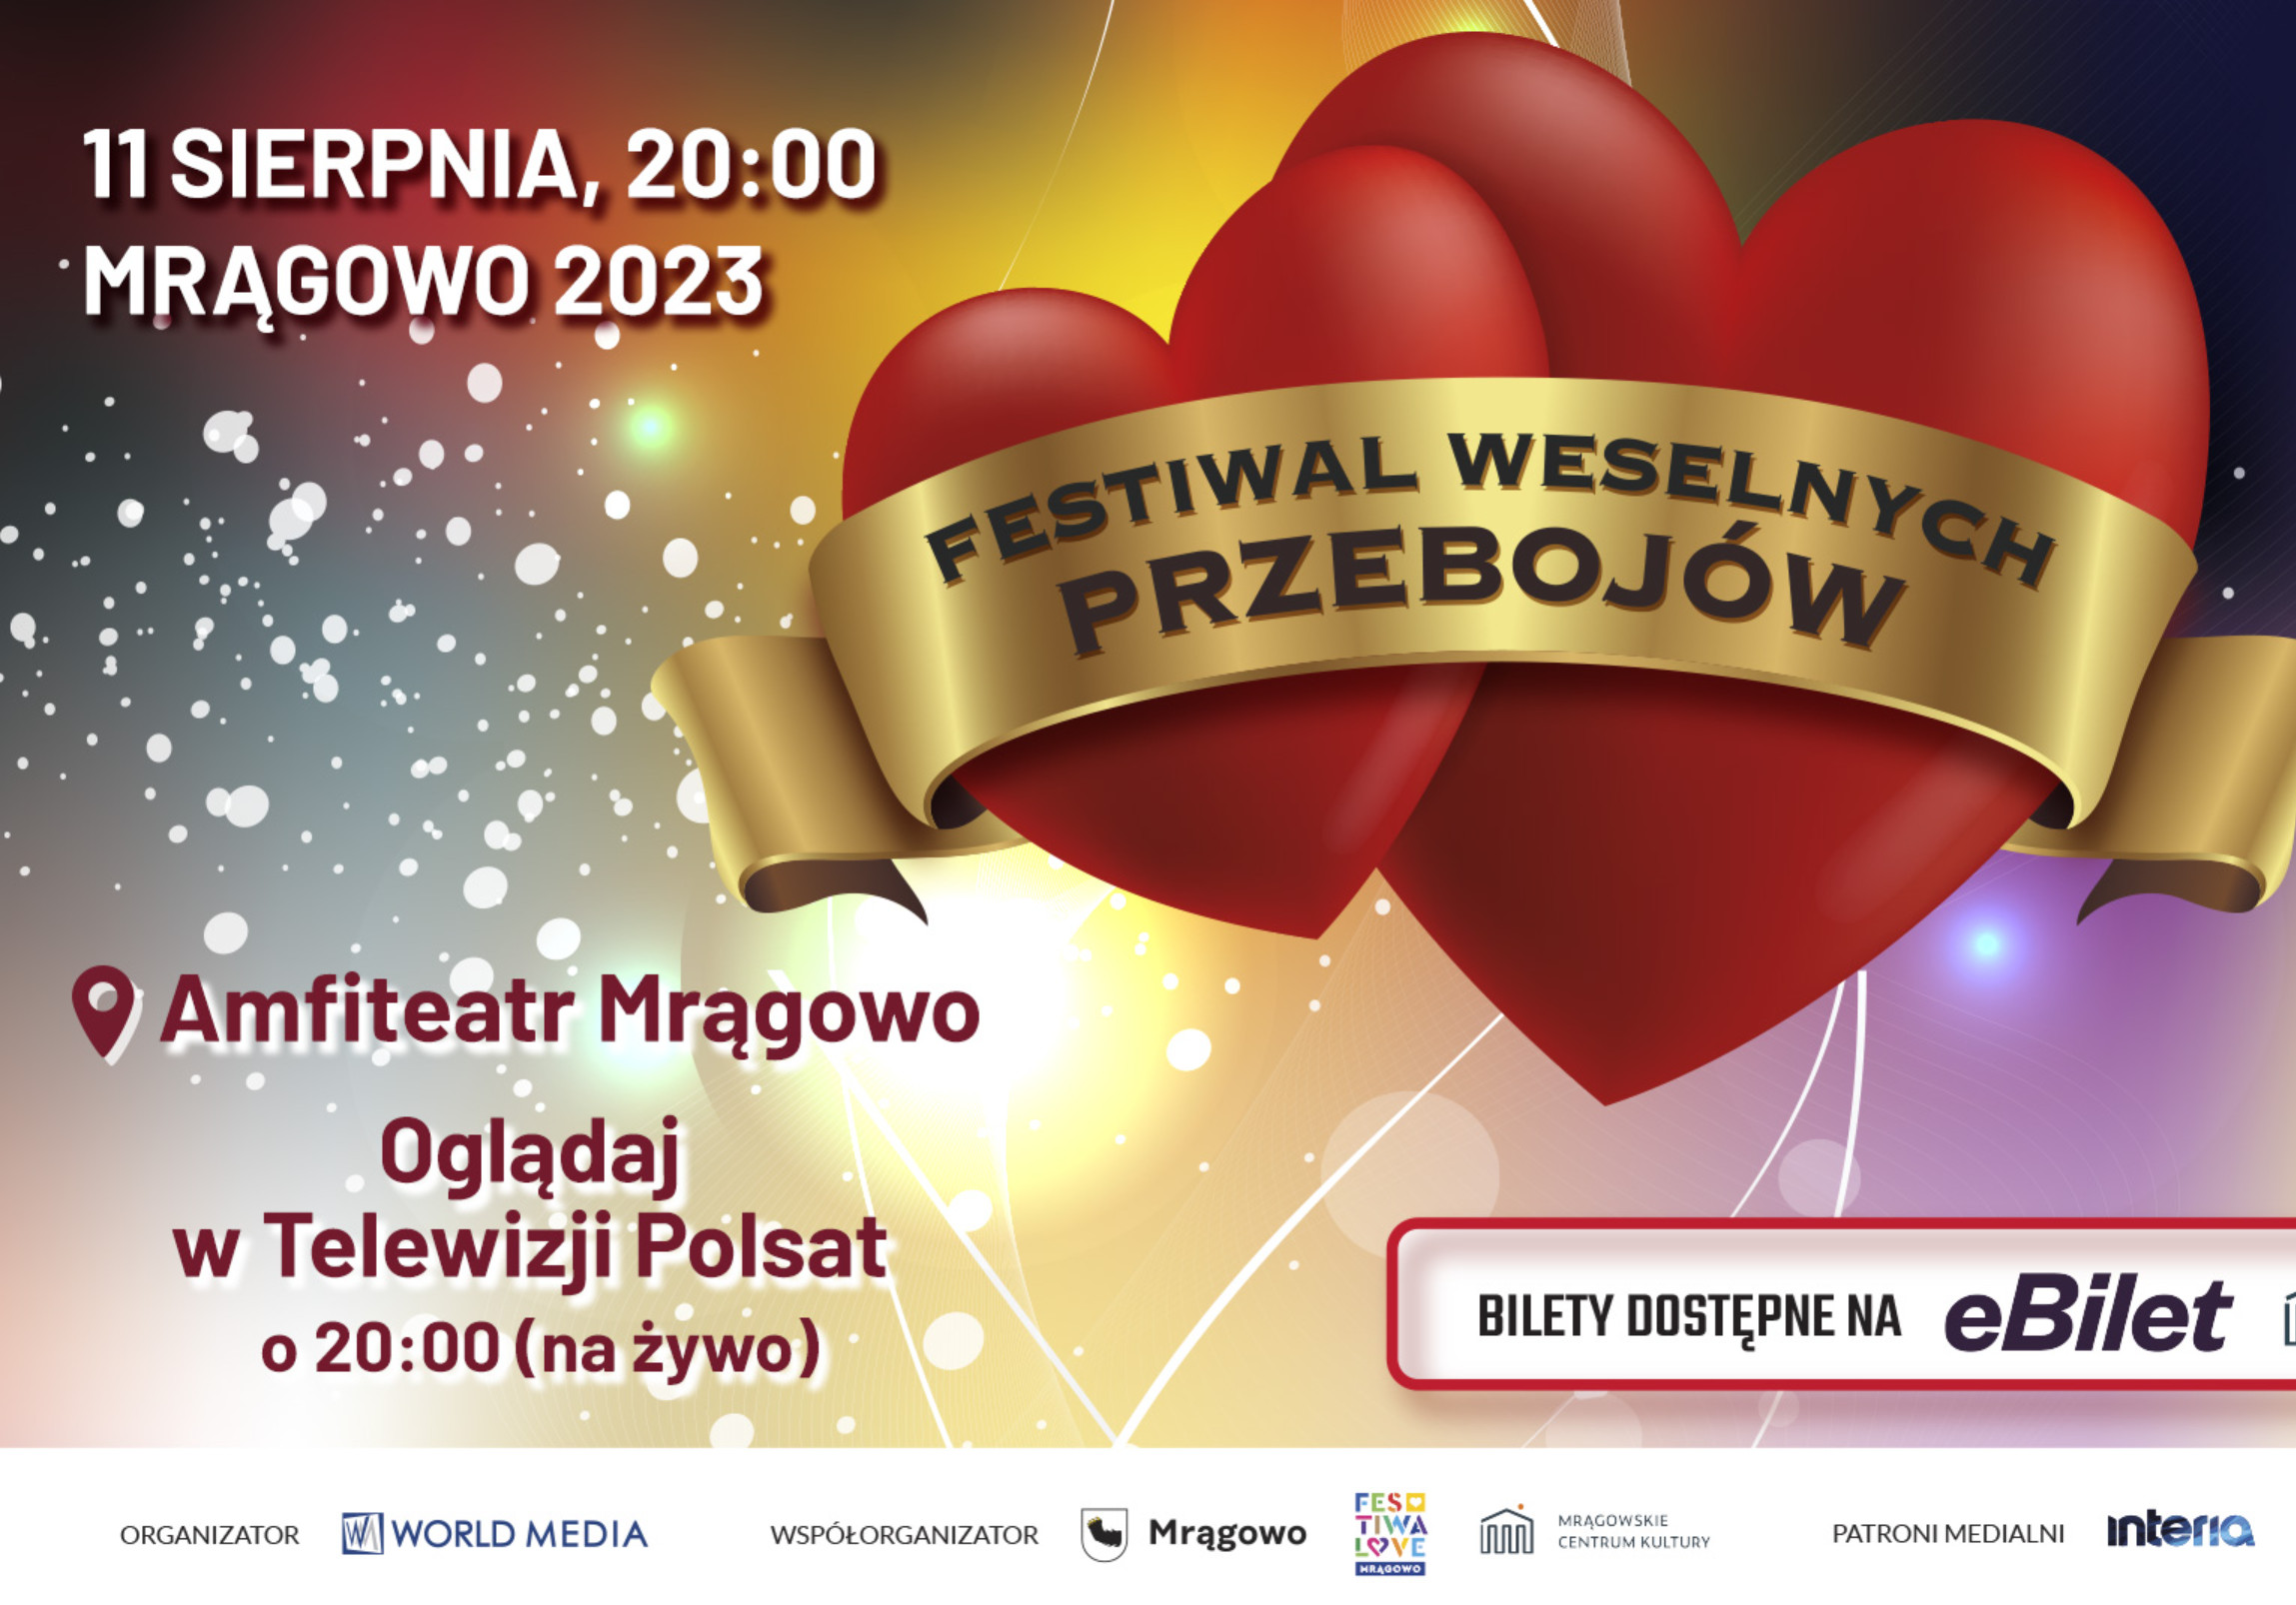 Festiwal Weselnych Przebojów 2023! Już 11 sierpnia 2023 roku!